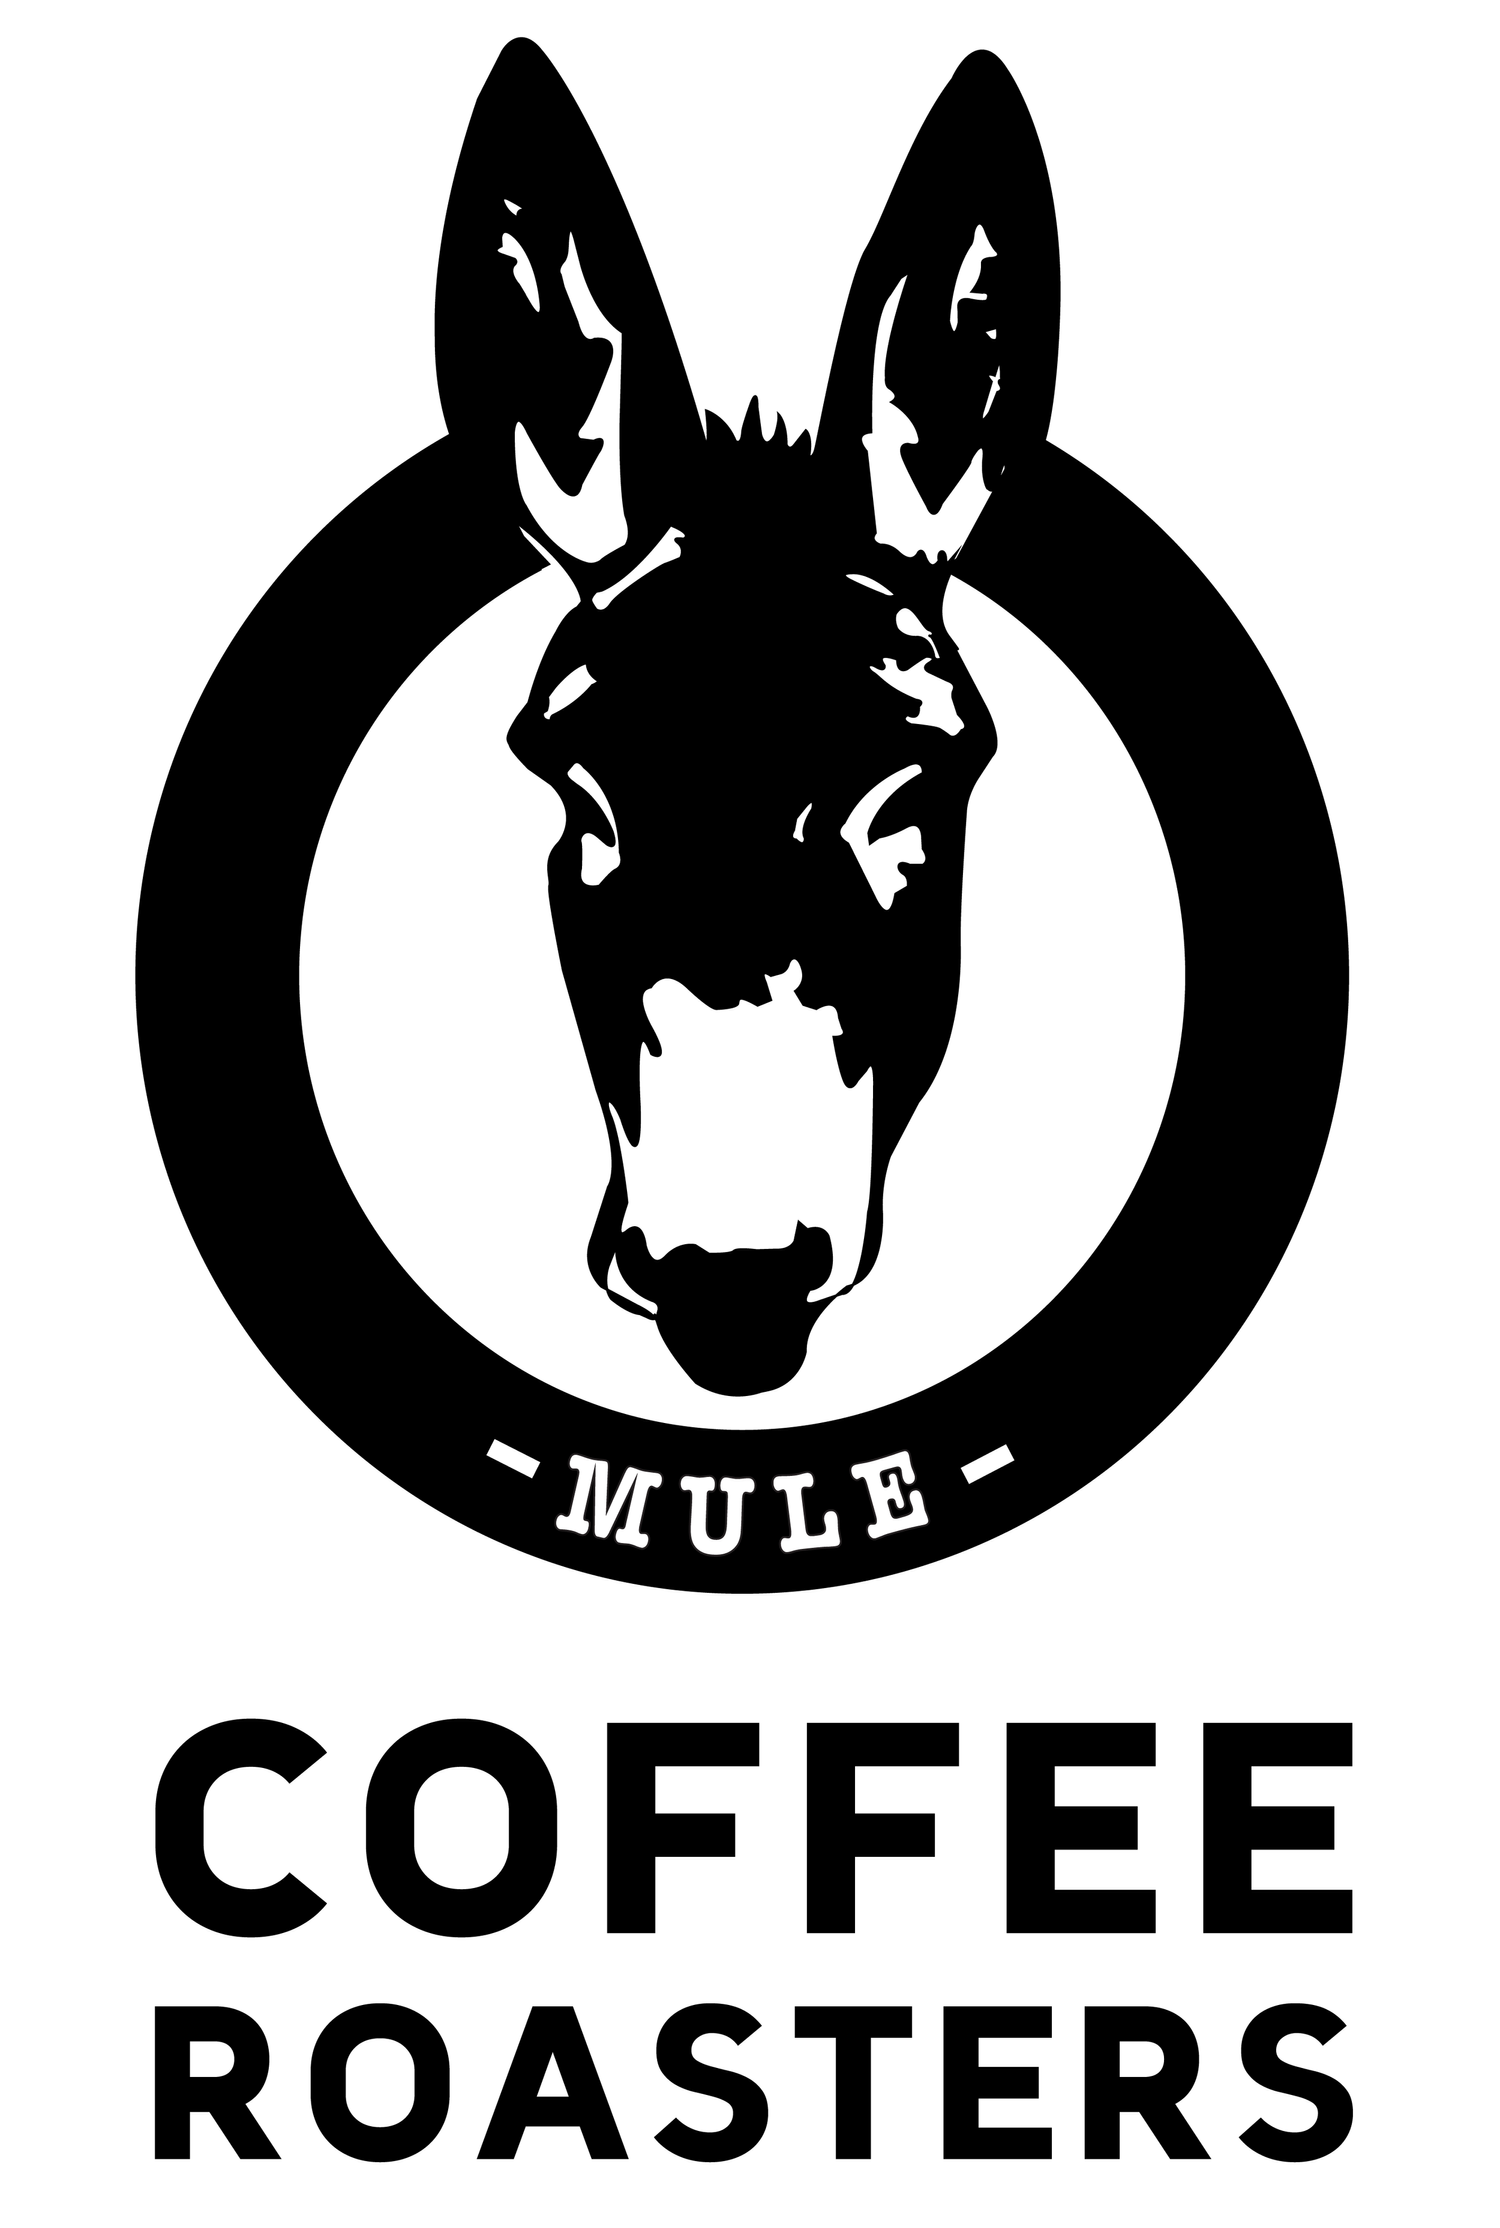 Mule Coffee Roasters